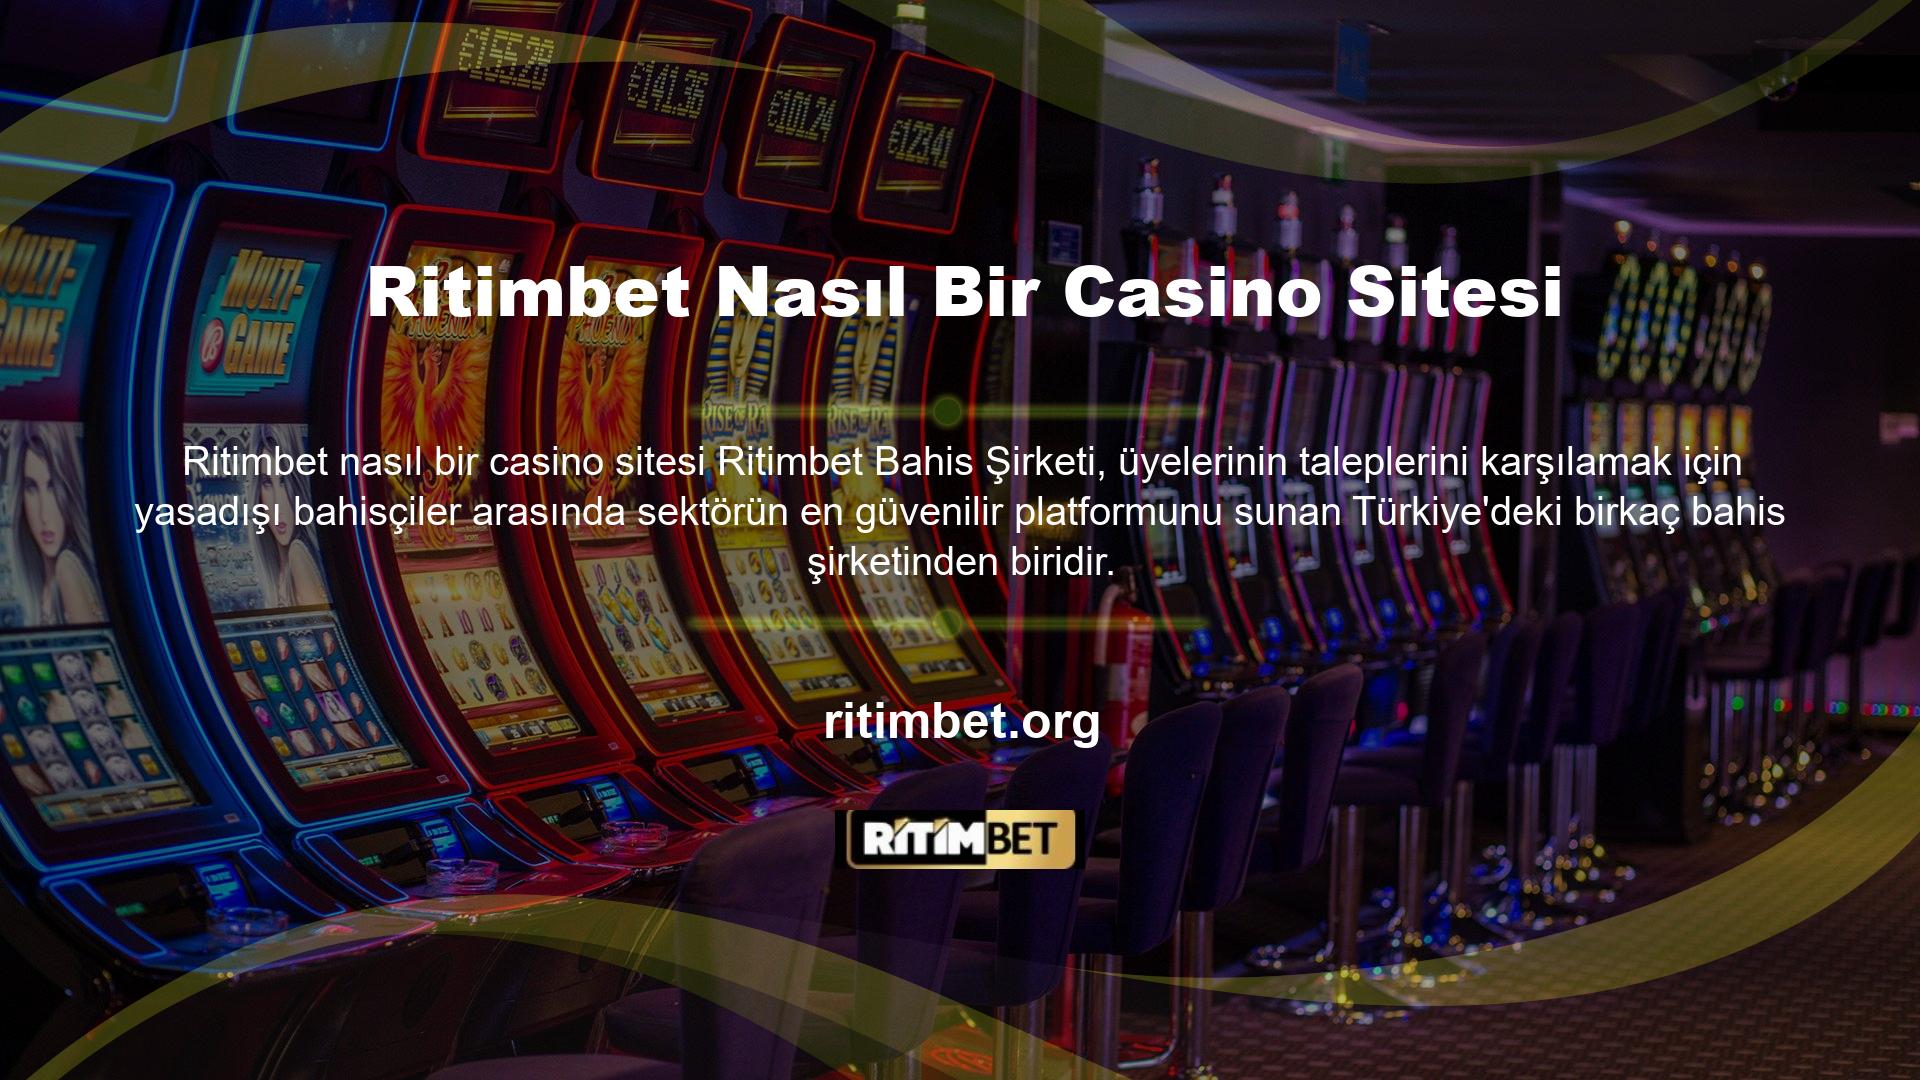 Spor ve casinolarda çok iyi bir iş çıkaran Ritimbet, bonus aktiviteleri ve kaliteli, sorunsuz hizmetiyle oyuncu ve bağlı kuruluş gelirlerini artırmasıyla ünlüdür